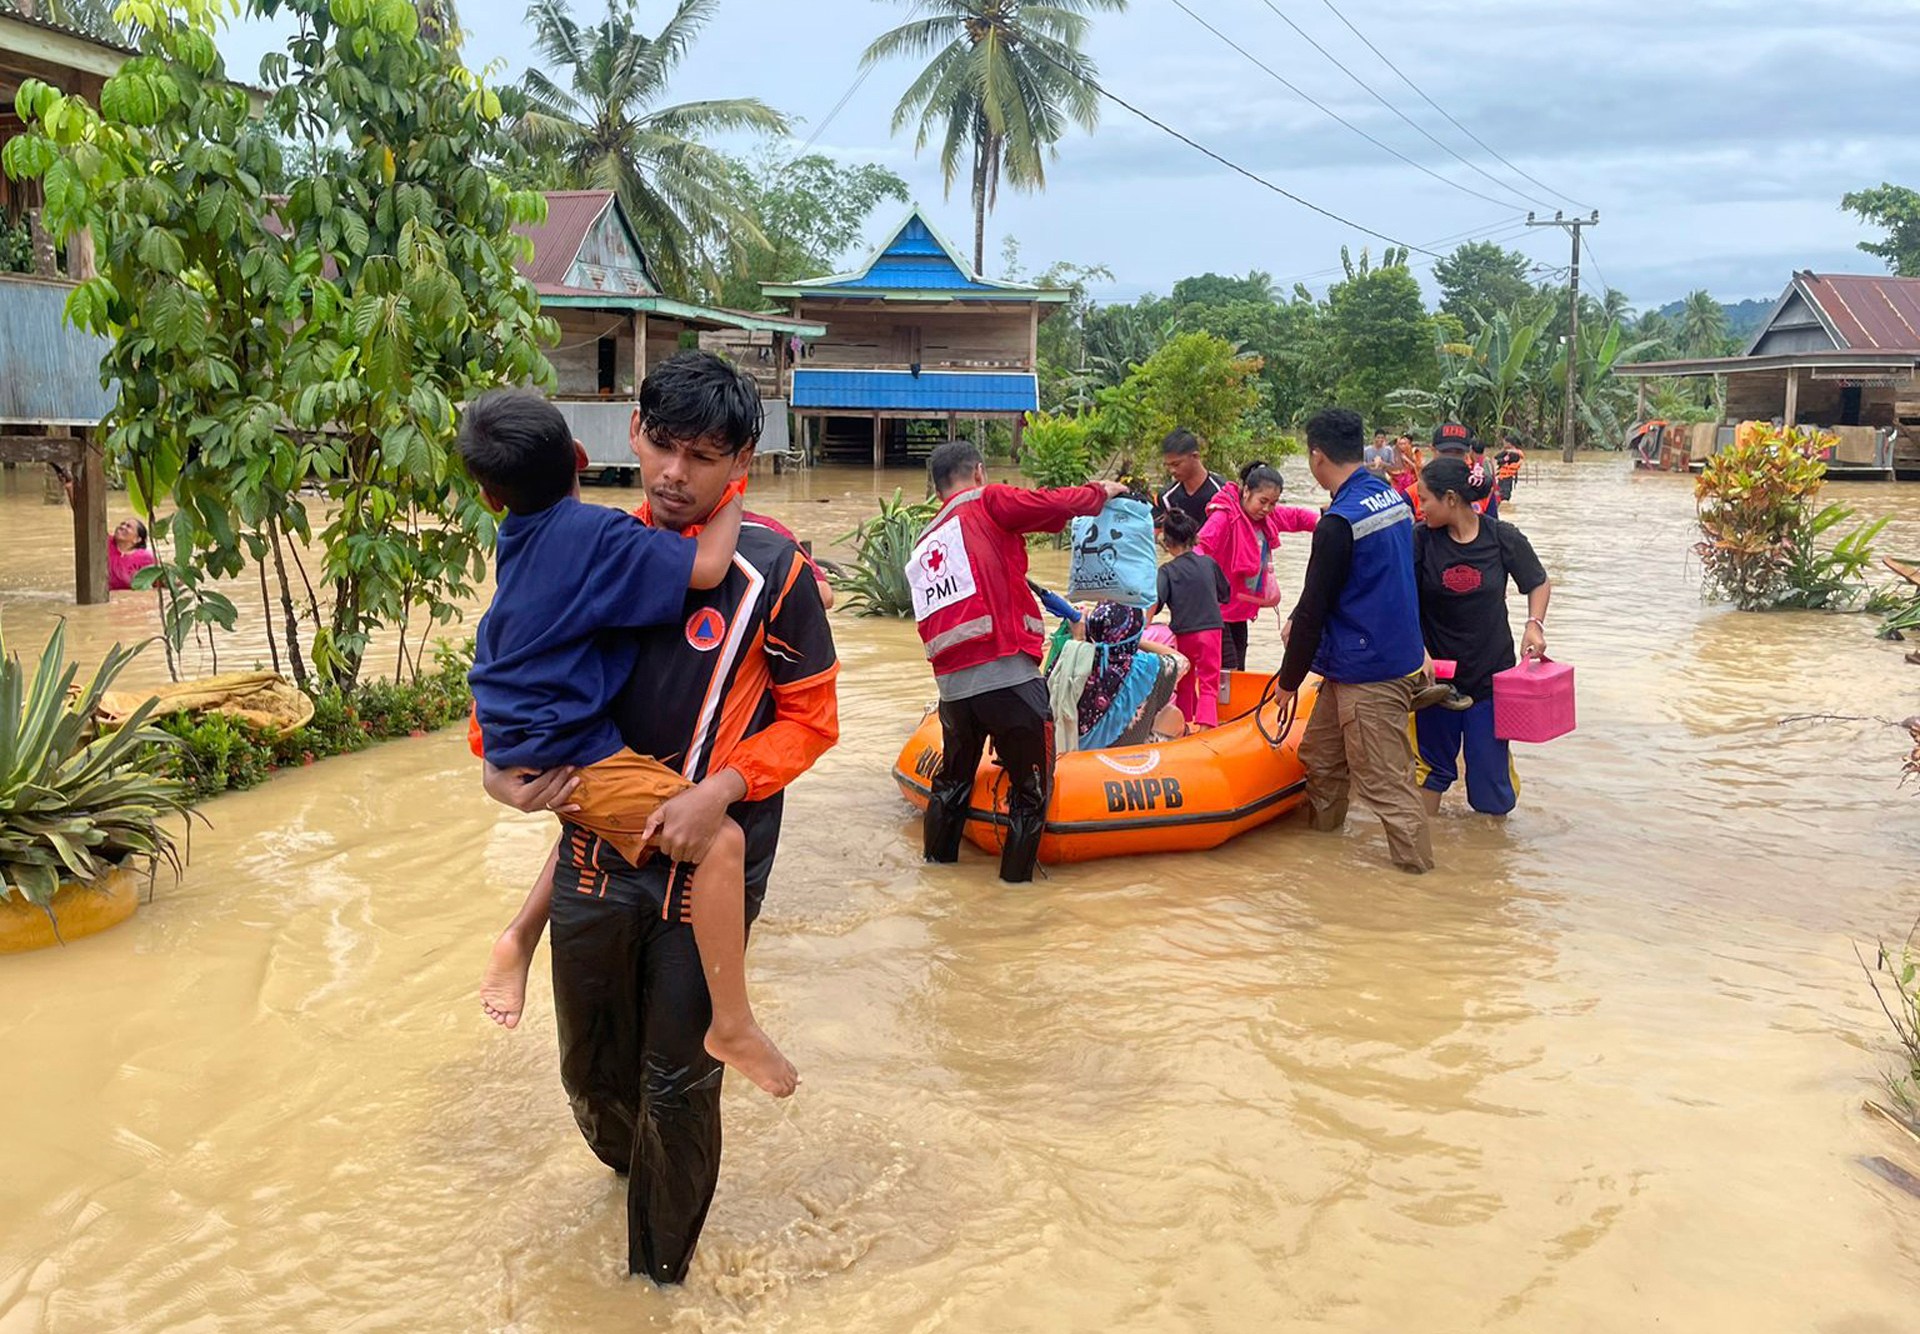 انهيارات أرضية وفيضانات تجتاح جنوب سولاويسي بإندونيسيا وتقتل 15 شخصا |  أخبار الطقس